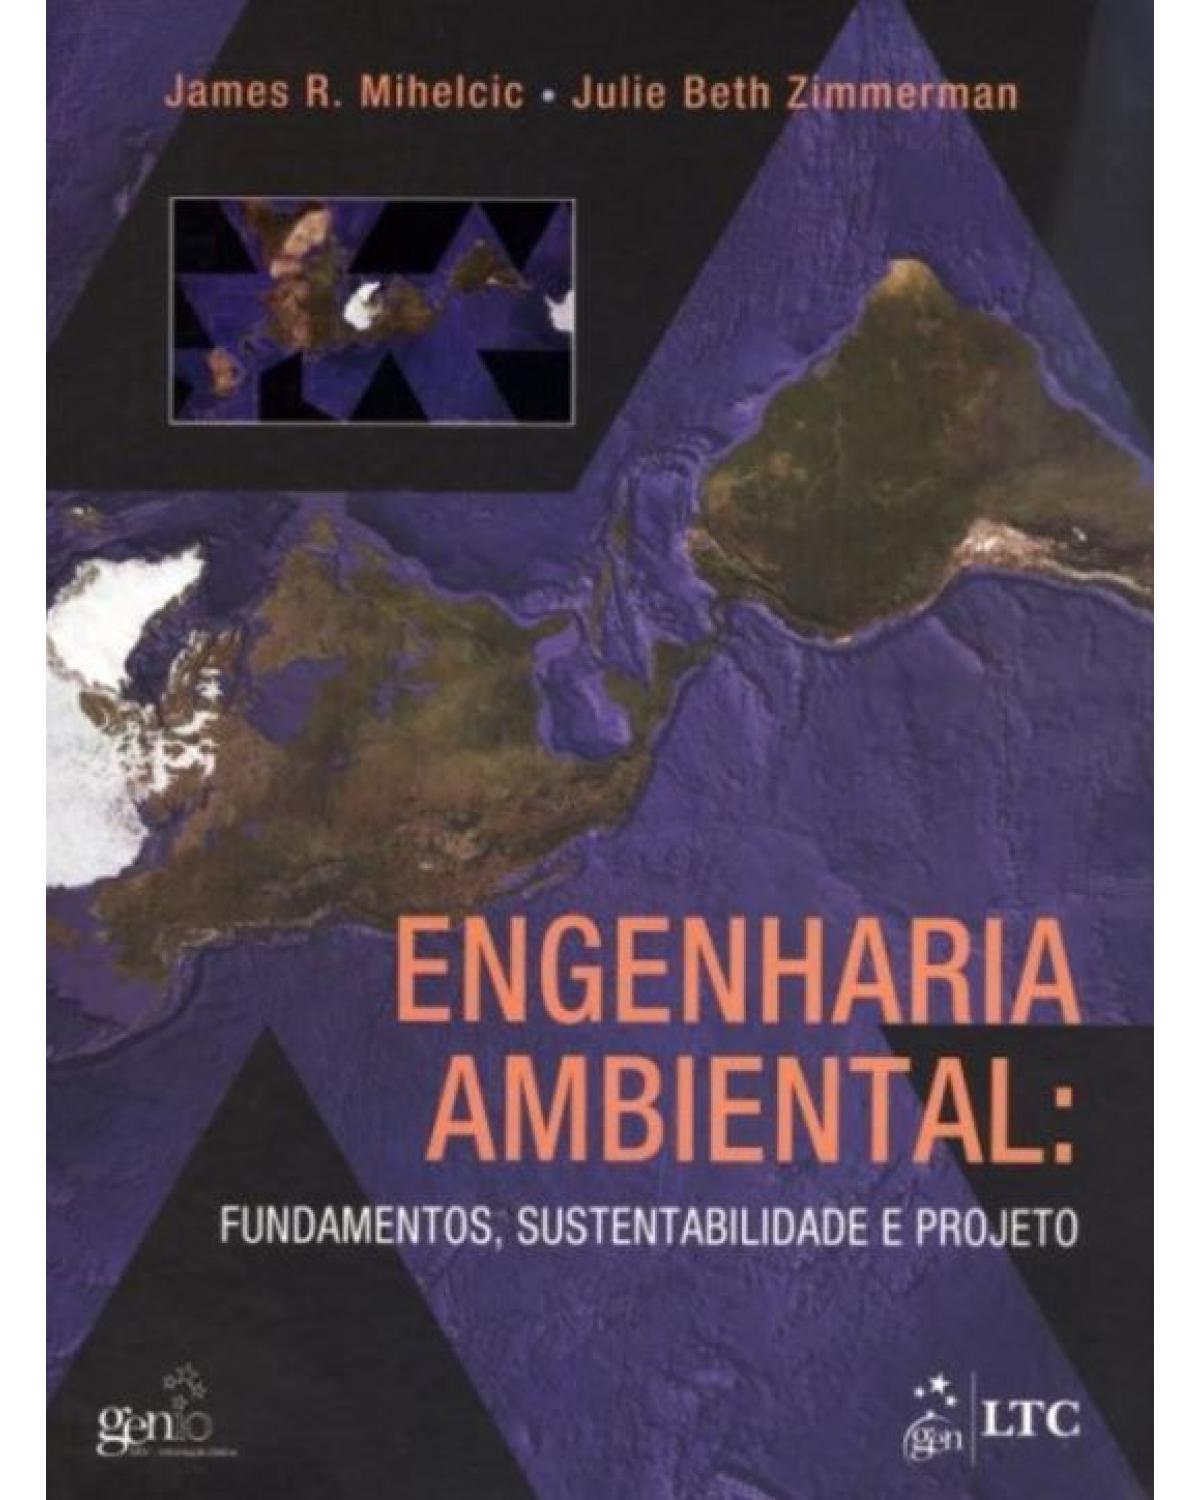 Engenharia ambiental - Fundamentos, sustentabilidade e projeto - 1ª Edição | 2012